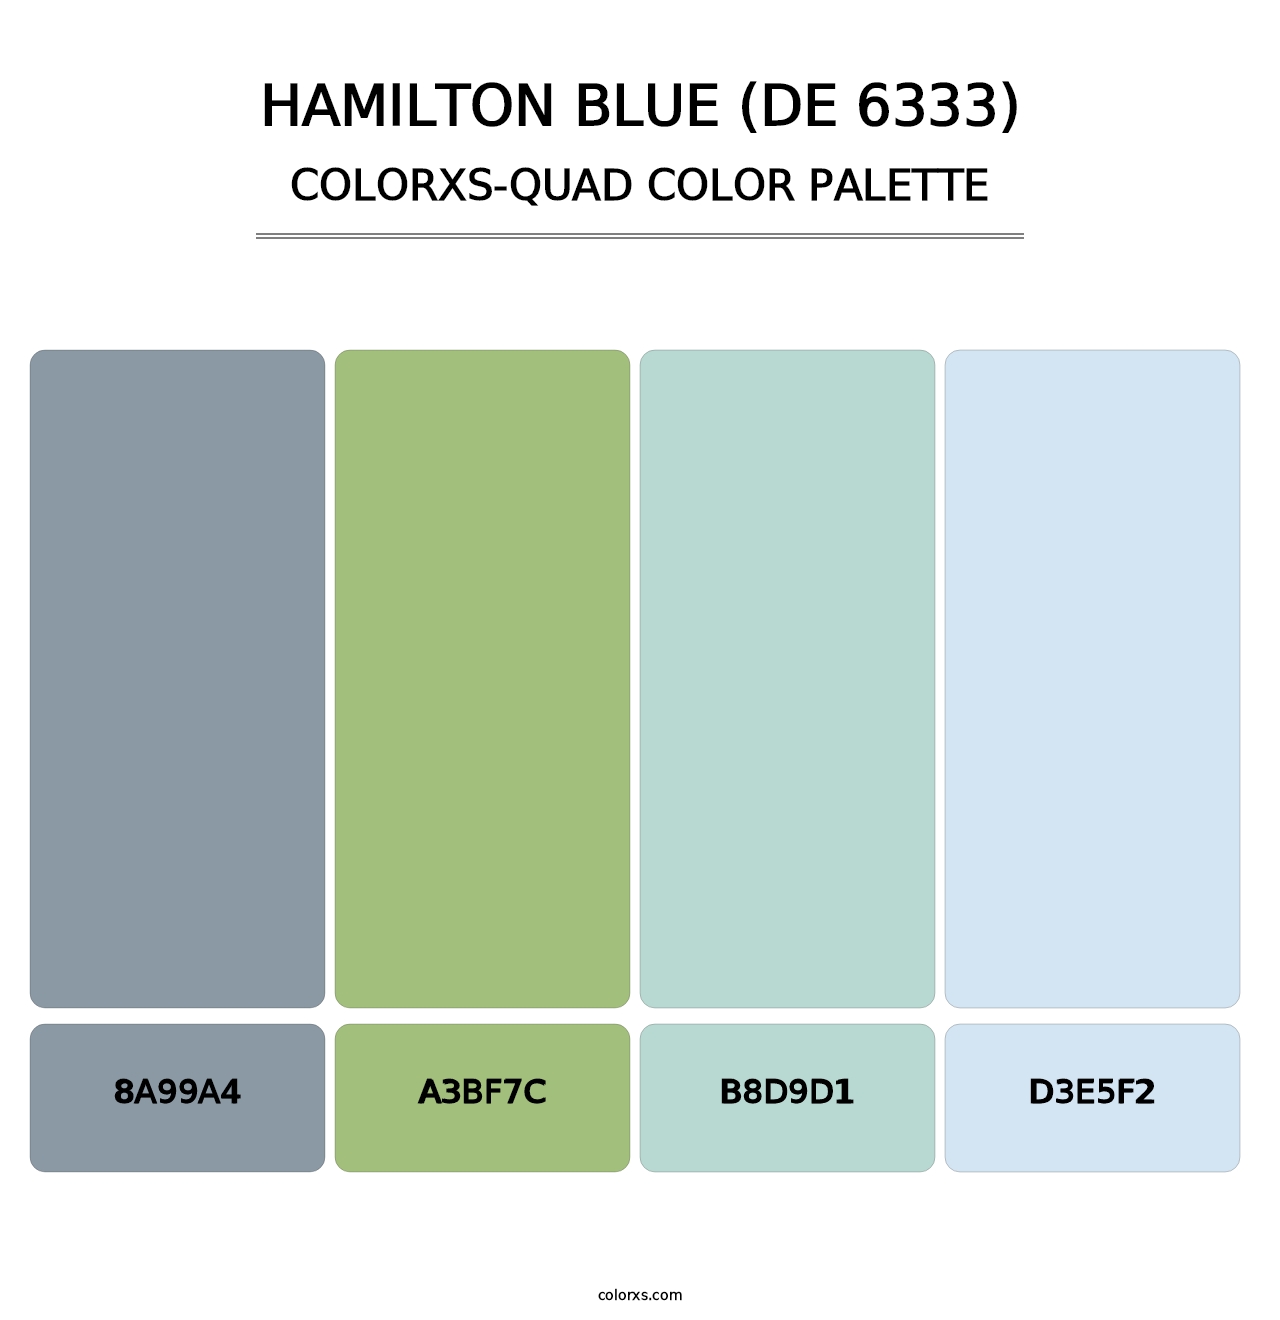 Hamilton Blue (DE 6333) - Colorxs Quad Palette